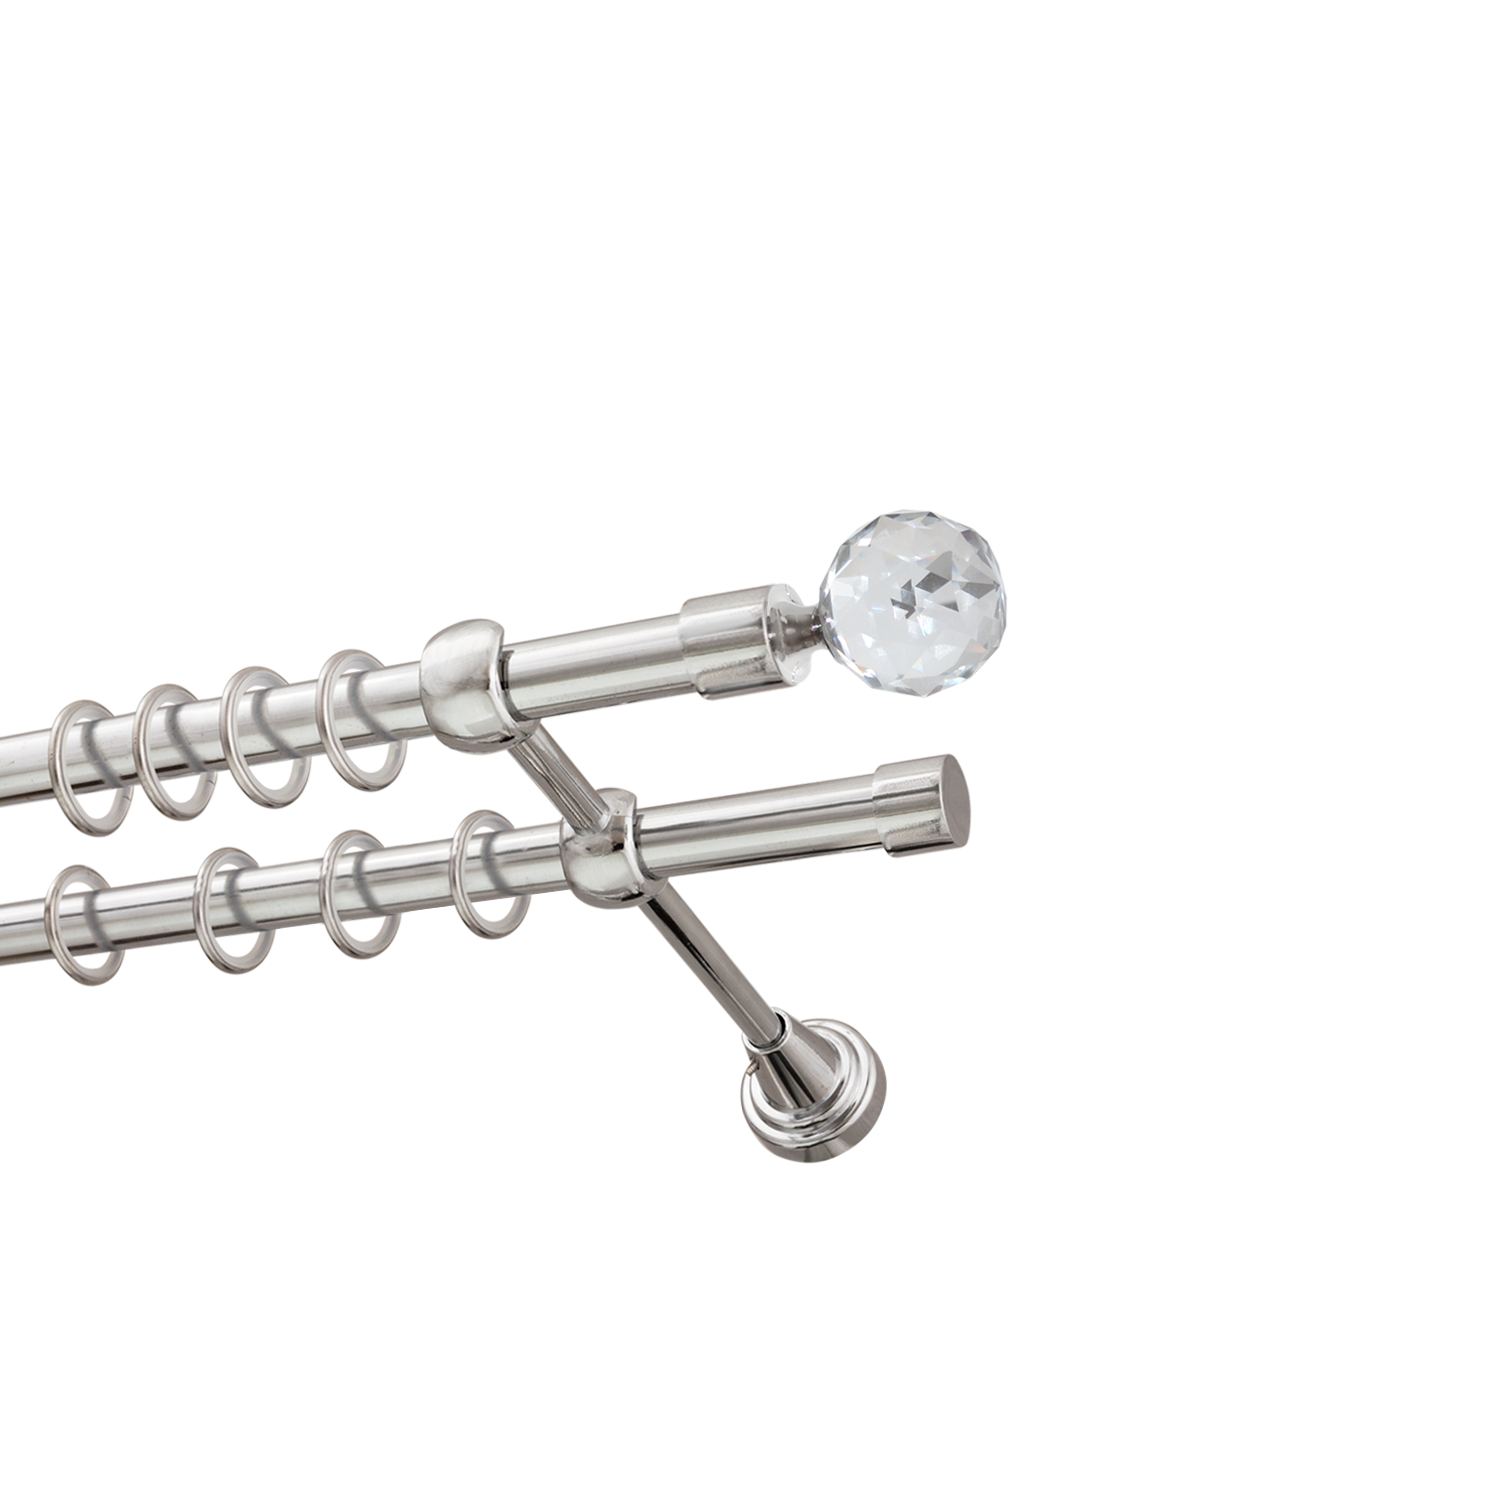 Металлический карниз для штор Карат, двухрядный 16/16 мм, серебро, гладкая штанга, длина 140 см